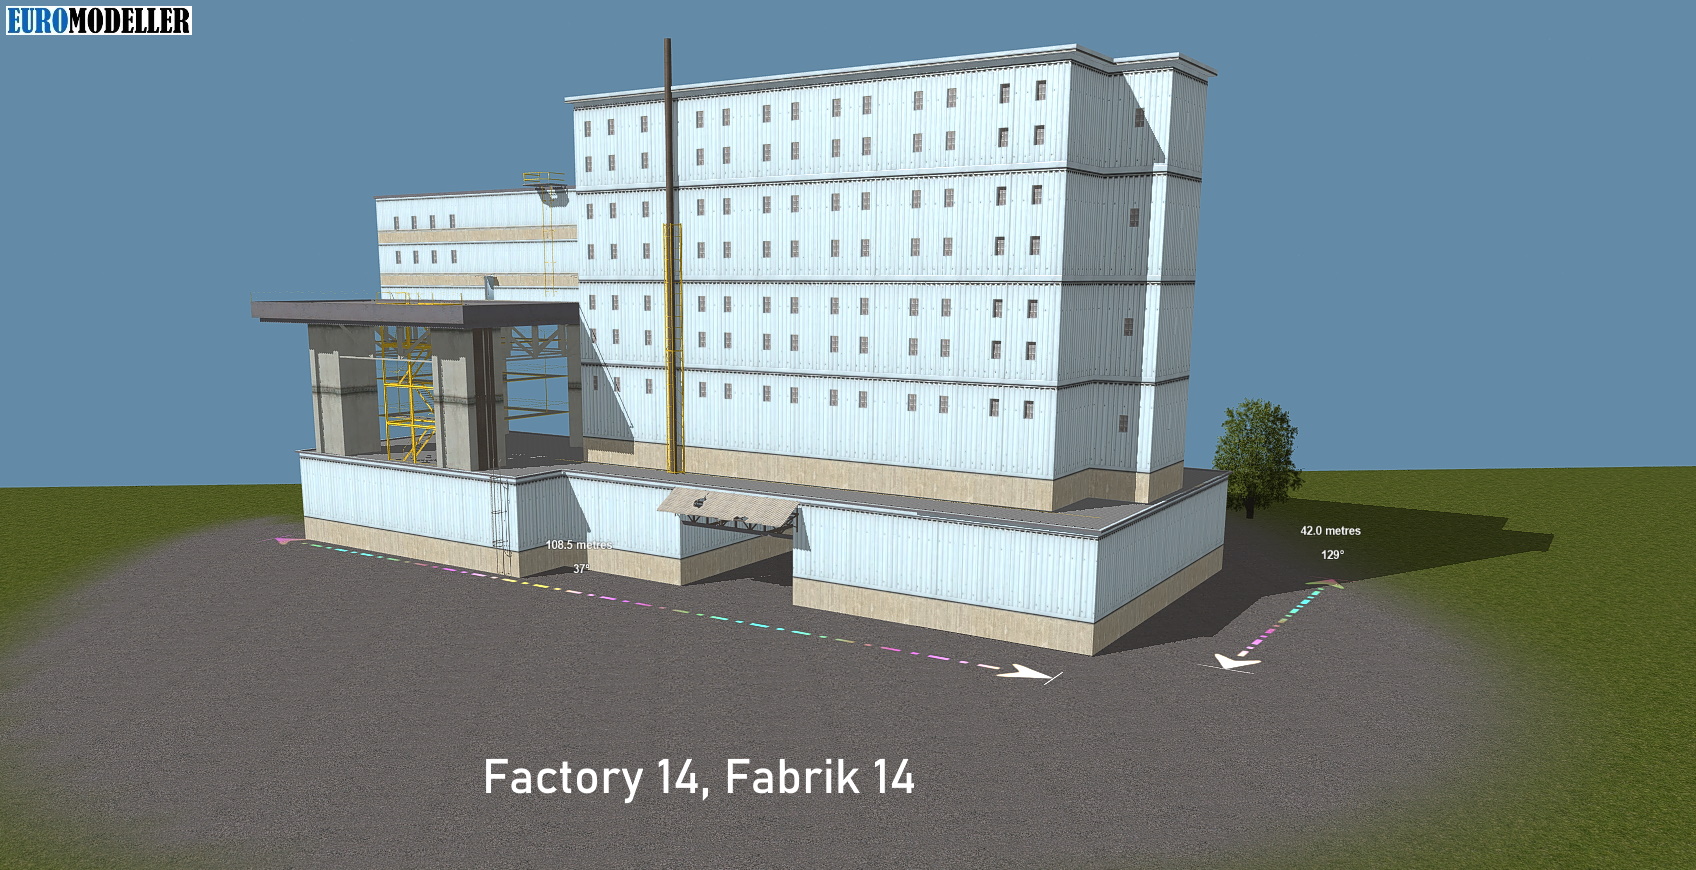 Factory 14, Fabrik 14